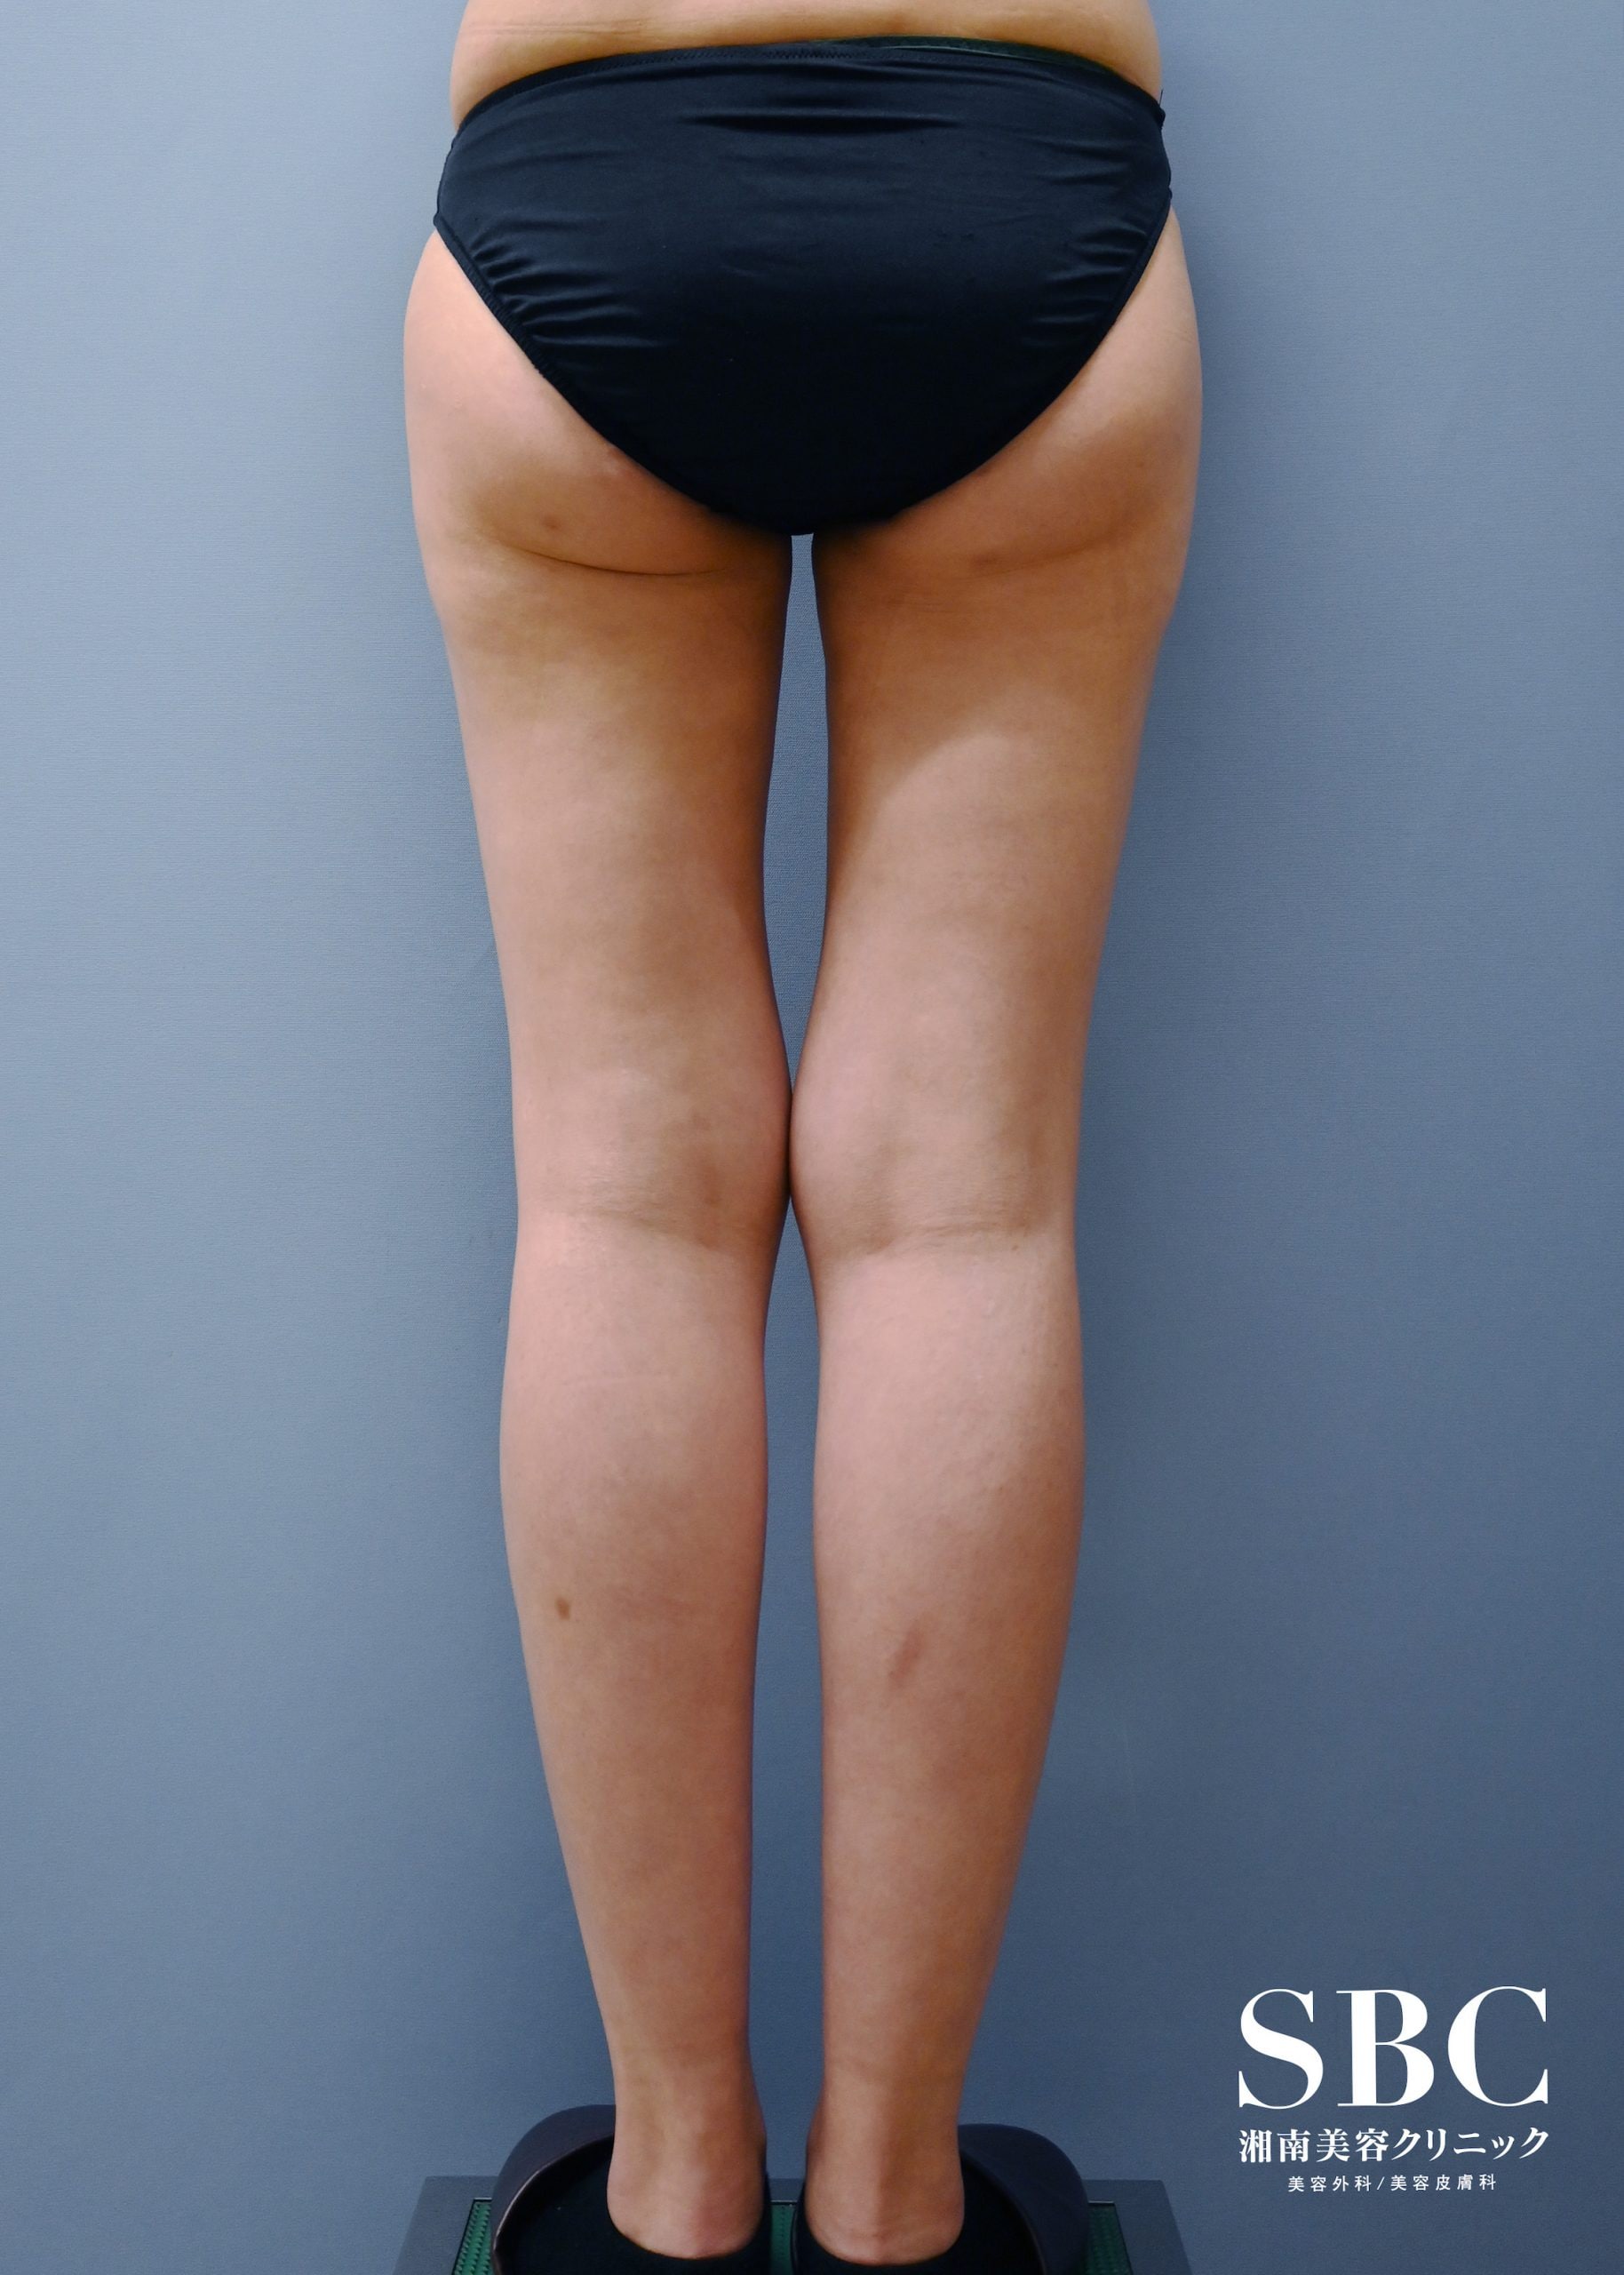 脂肪吸引・20代女性 の術後の症例写真